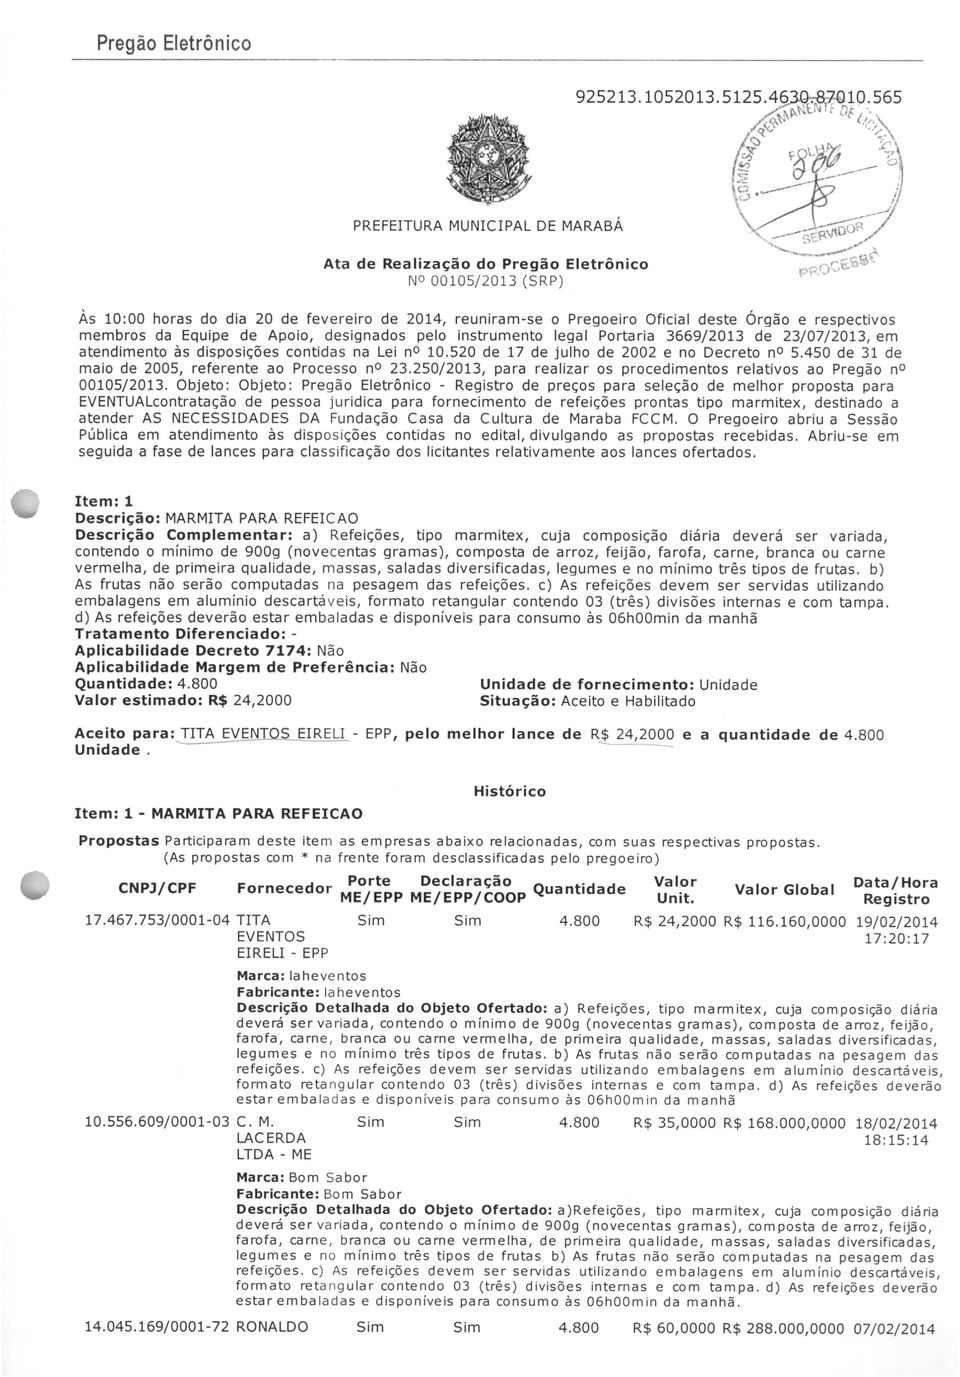 450 de 31 de maio de 2005, referente ao Processo na 23.250/2013, para realizar os procedimentos relativos ao Pregão na 00105/2013.